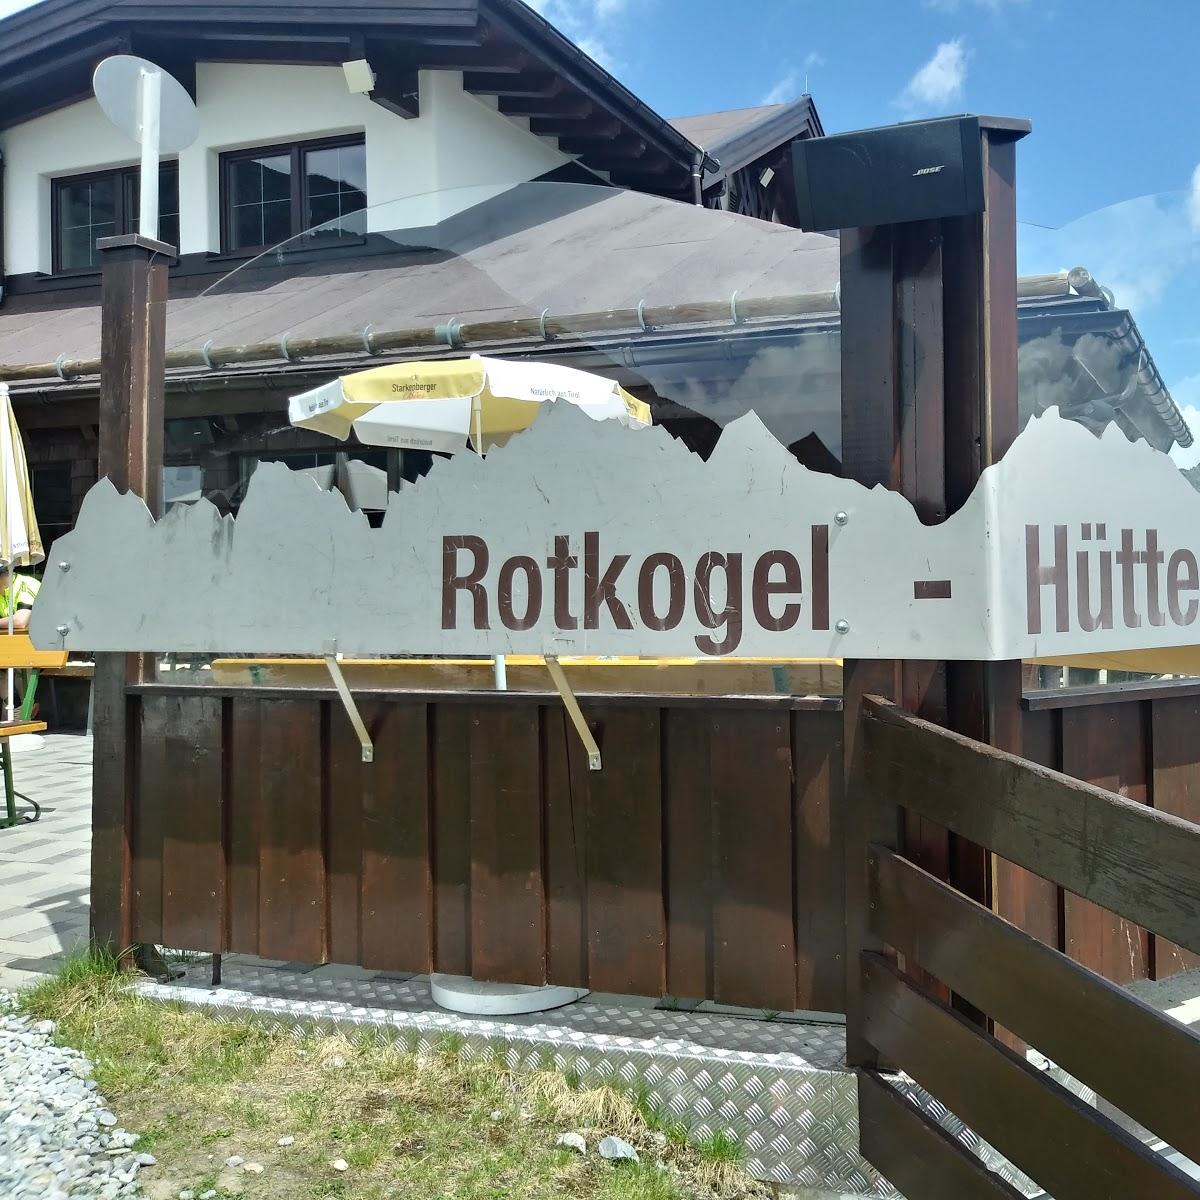 Restaurant "Rotkogel Hütte" in Sölden